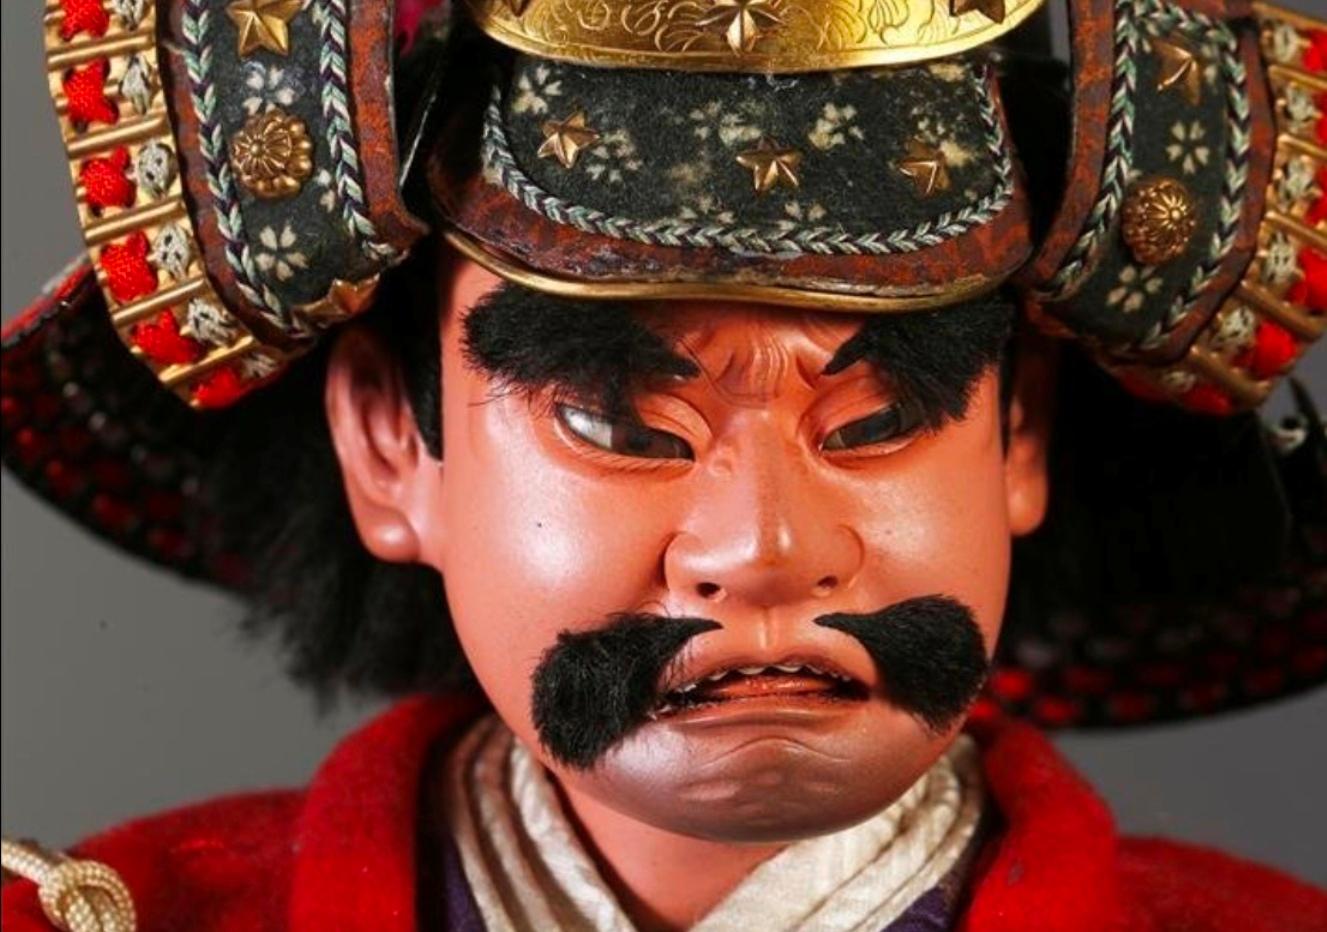 Japanische Meiji-Zeit Samurai Ningyo Puppe von Kato Kiyomasa in raffinierten Iki-Stil mit detaillierten spektakulären Präsentation Roben und Helm.
Kato Kiyomasa (1562-1611) war ein japanischer Daimyo aus der Azuchi-Momoyama- und Edo-Zeit. Sein